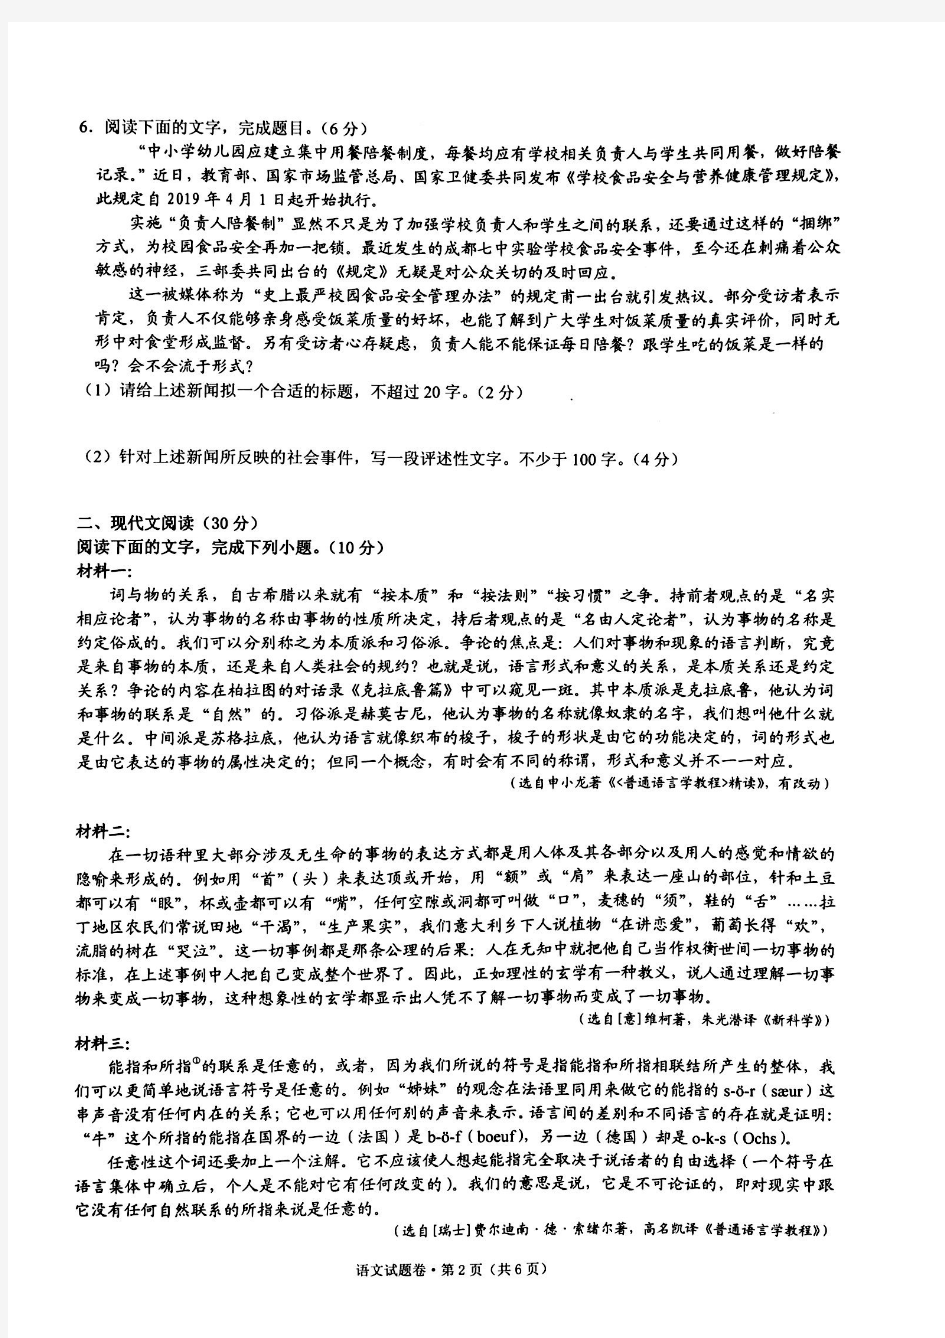 2019年杭州学军中学高三最后一模语文试卷及答案